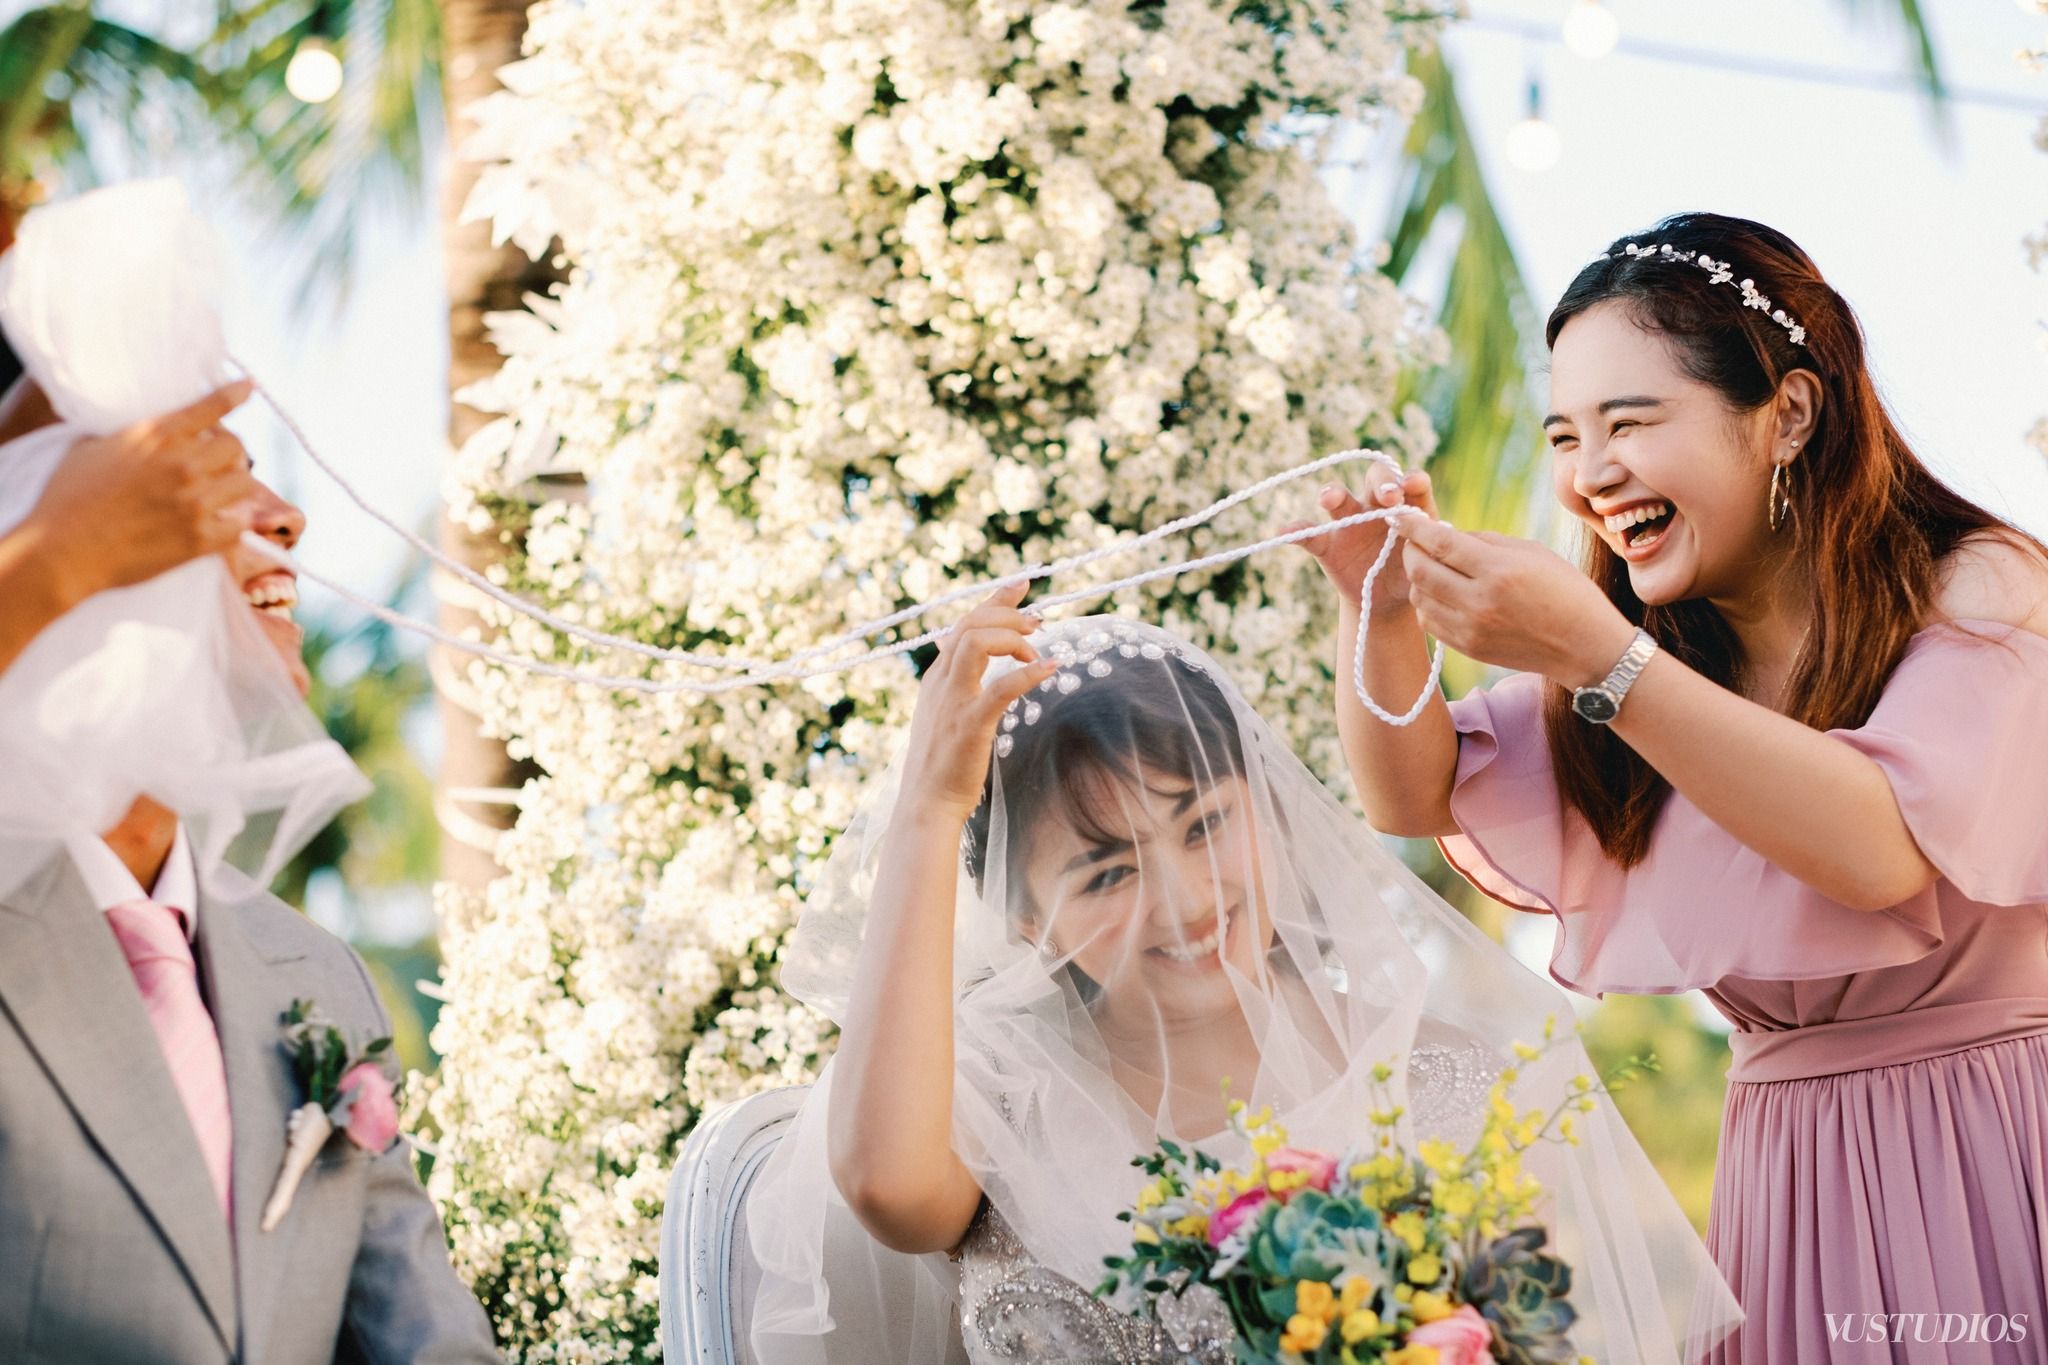 ƯU ĐÃI GIẢM GIÁ 50% THỨC UỐNG SIÊU TIẾT KIỆM - CHAMPA ISLAND WEDDING